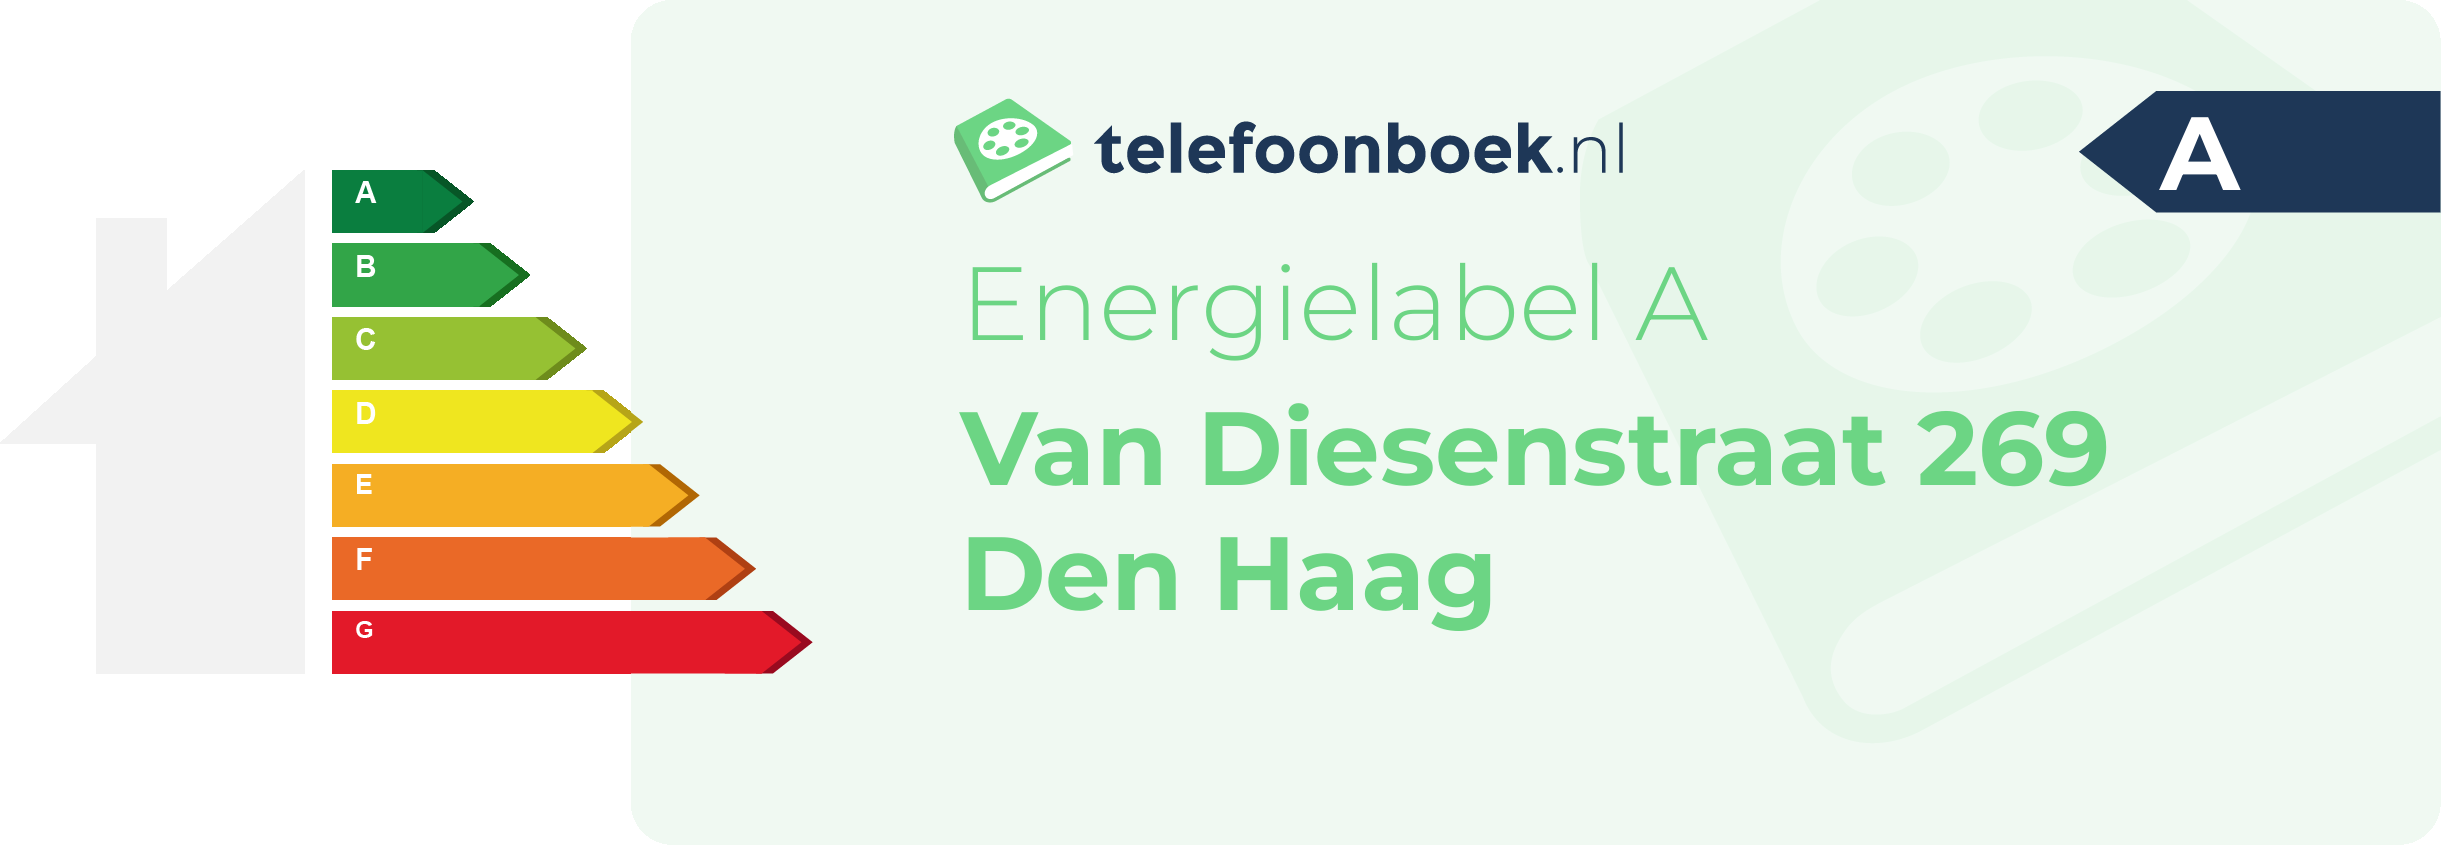 Energielabel Van Diesenstraat 269 Den Haag